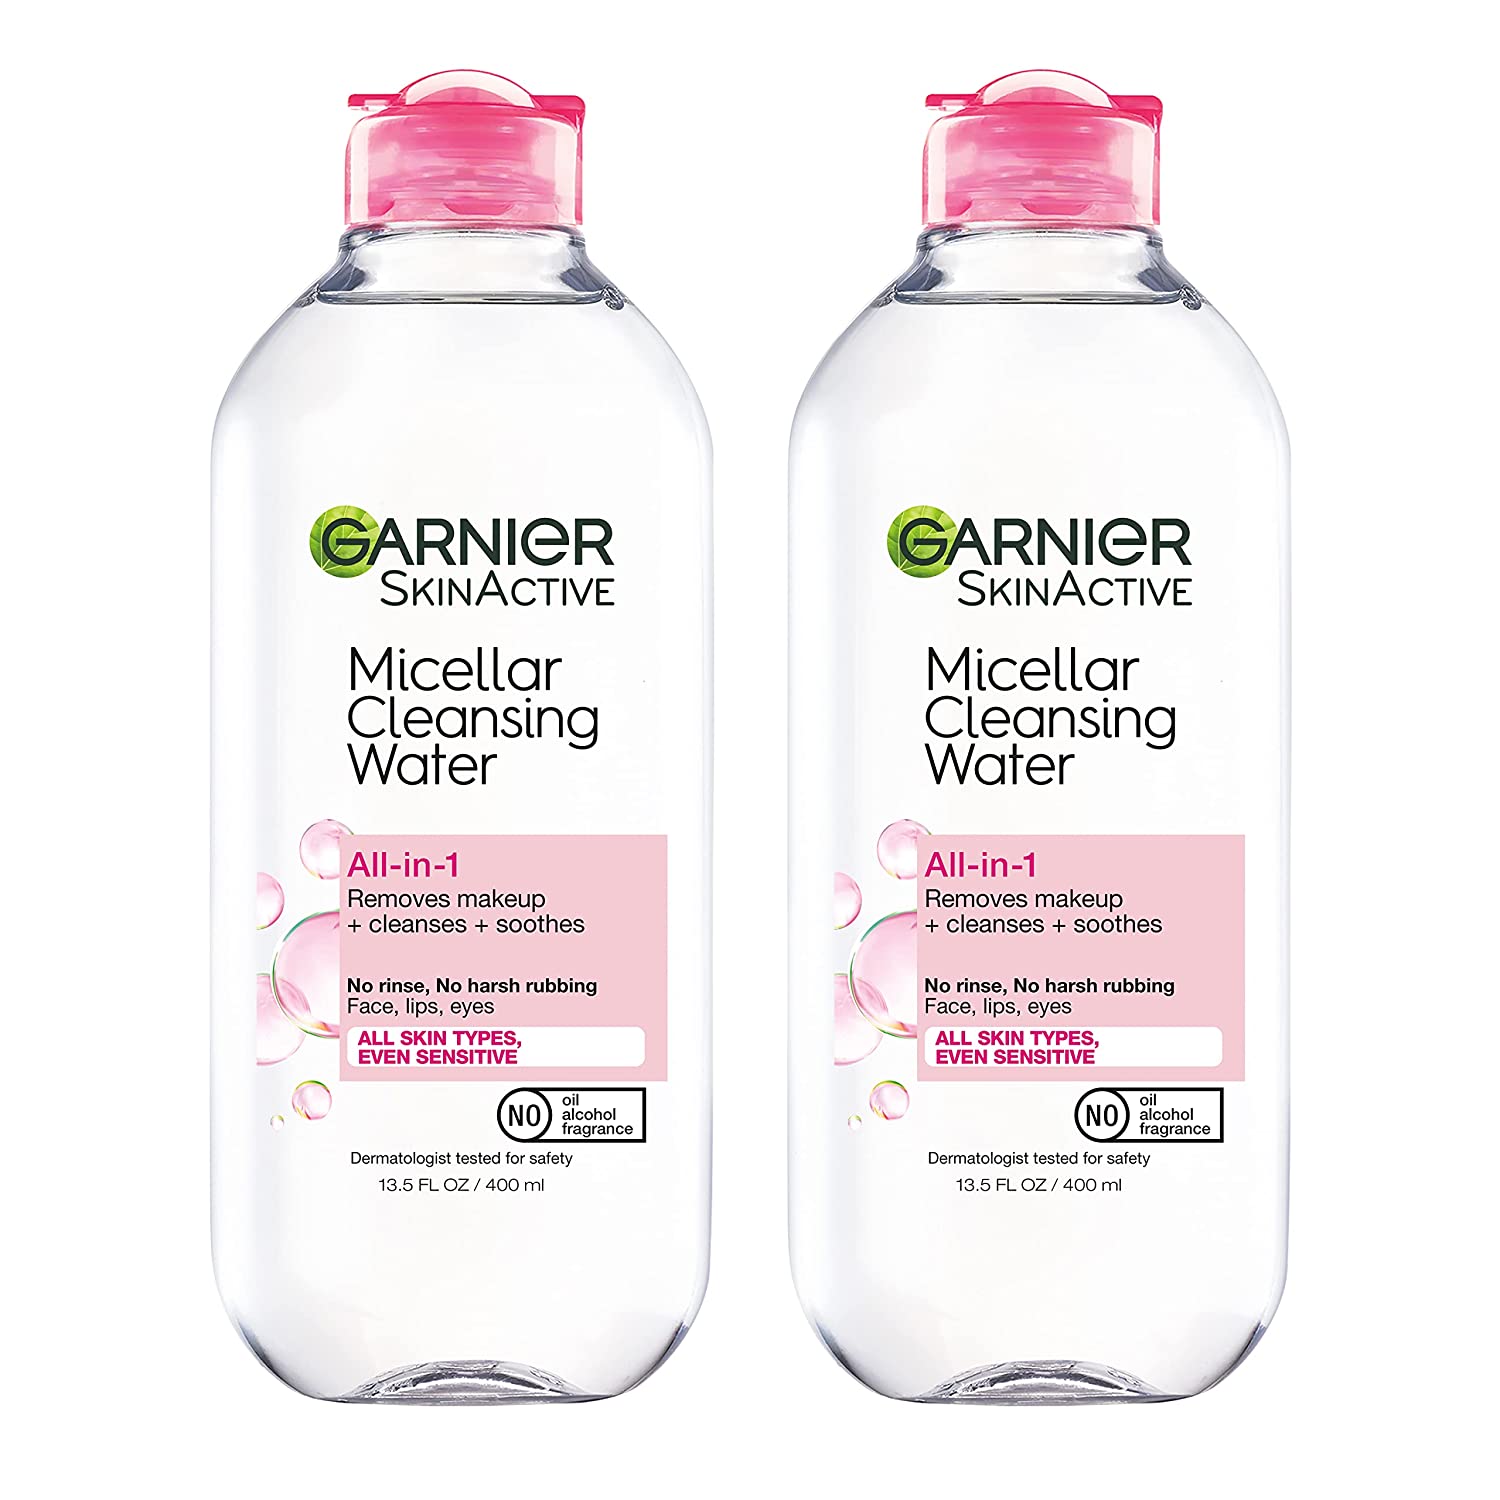 gødning Midlertidig At tilpasse sig Garnier Micellar Cleansing Water Liquid Makeup Remover, 2-Pack